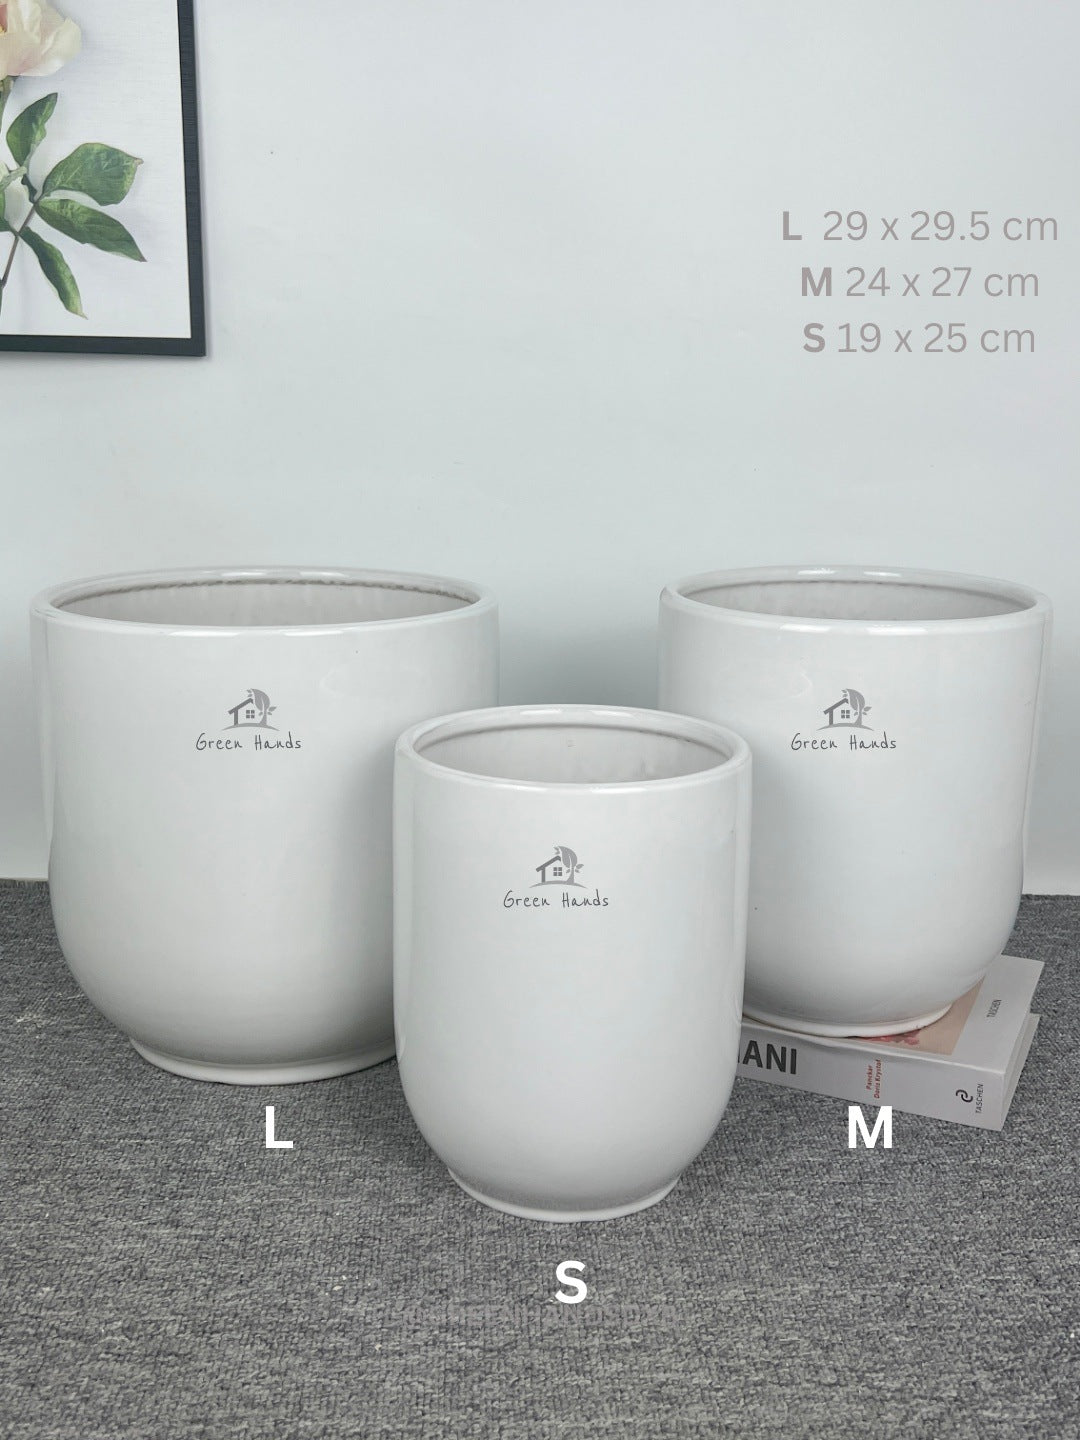 Best Value White Ceramic Pots in UAE